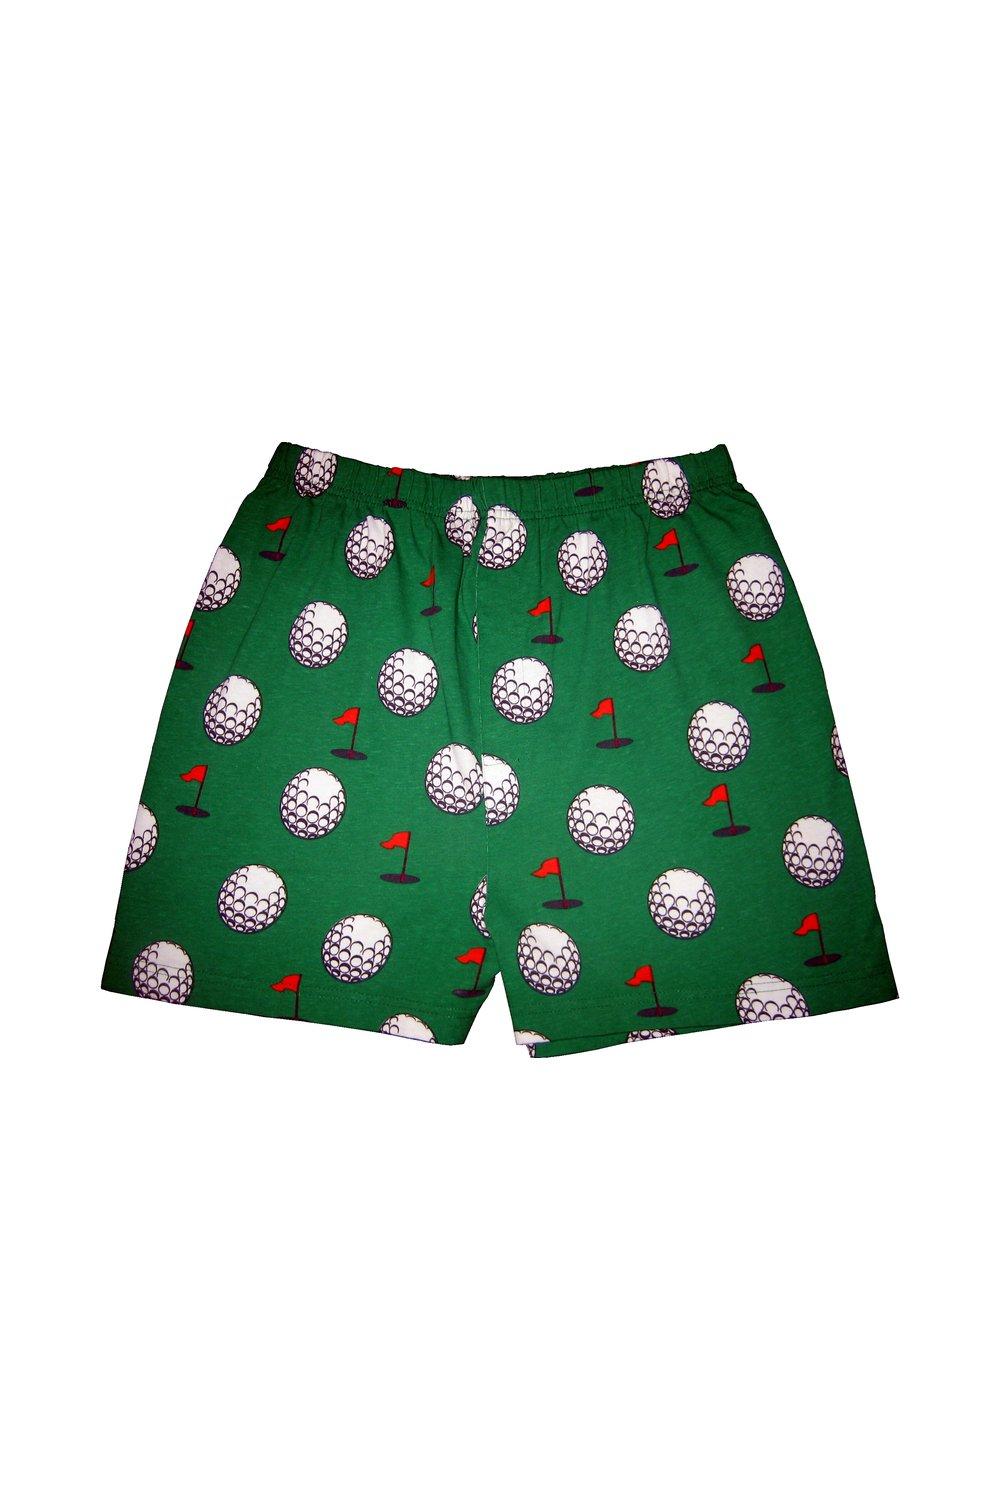 шорты lamade silky seamed boxer shorts 1 пара боксеров Magic с узором для гольфа SOCKSHOP, зеленый